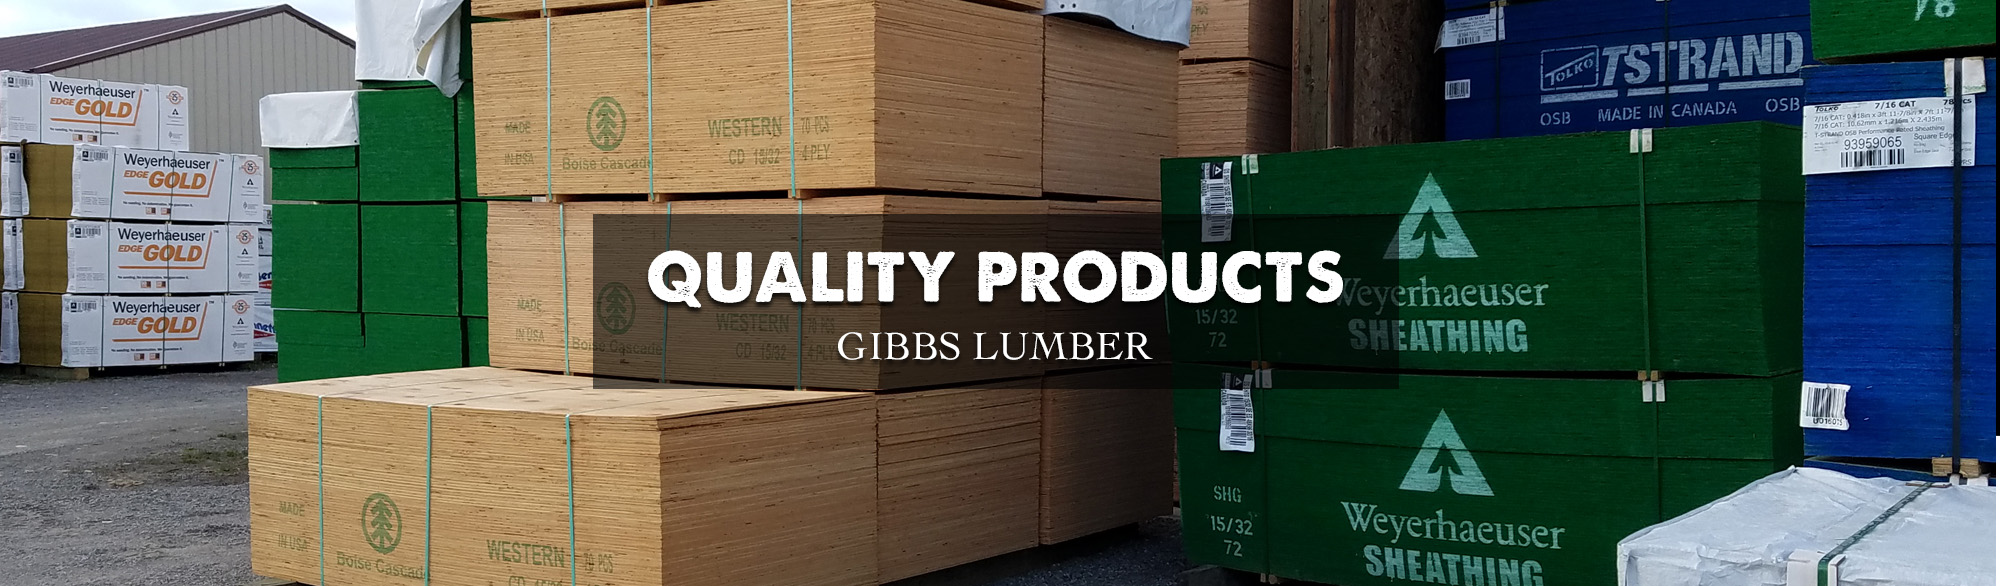 Gibbs lumber